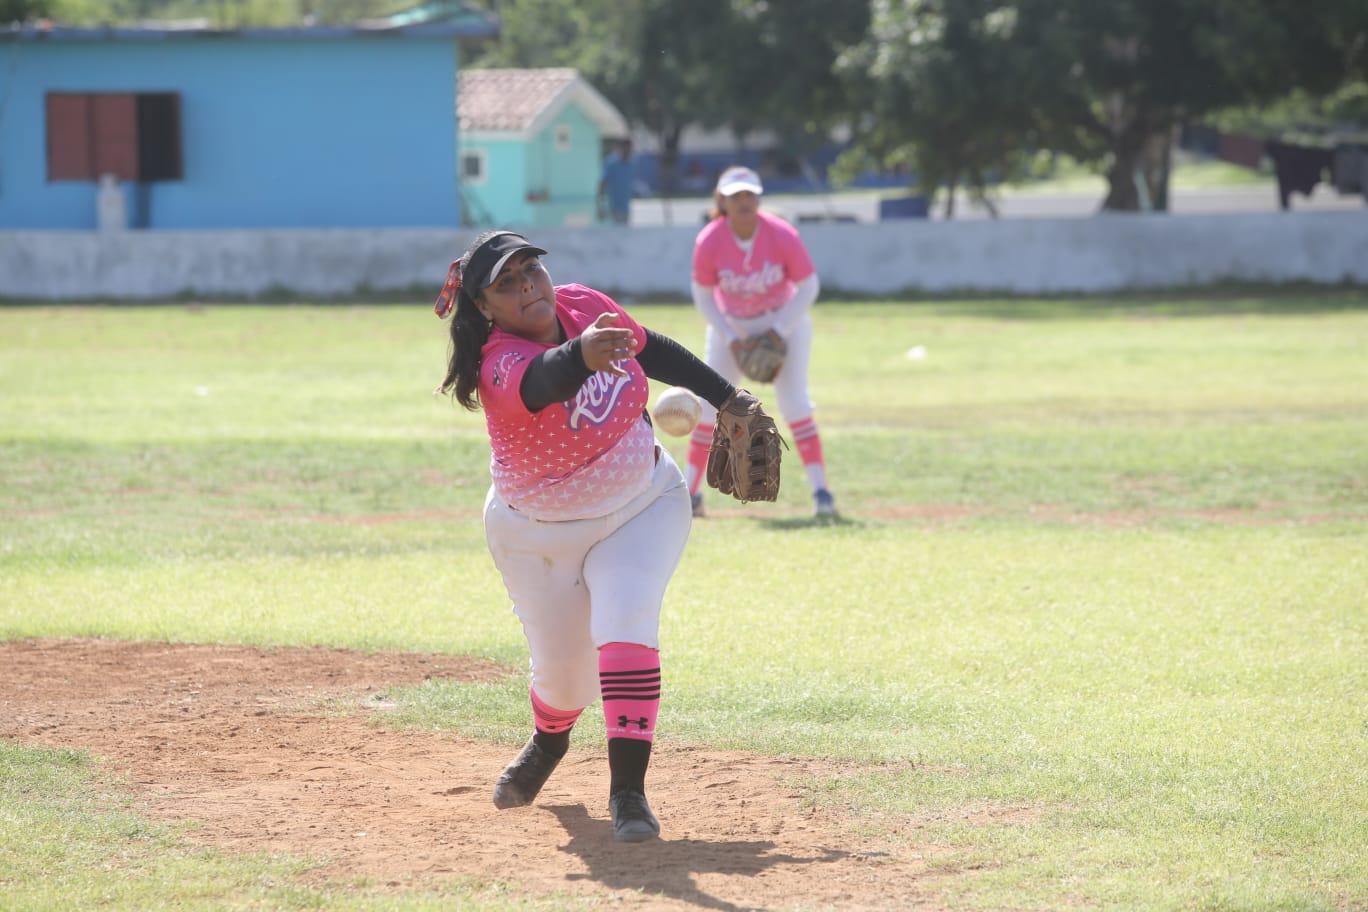 $!Durango conquista el campeonato de Softbol ‘Amigos del Chololos’